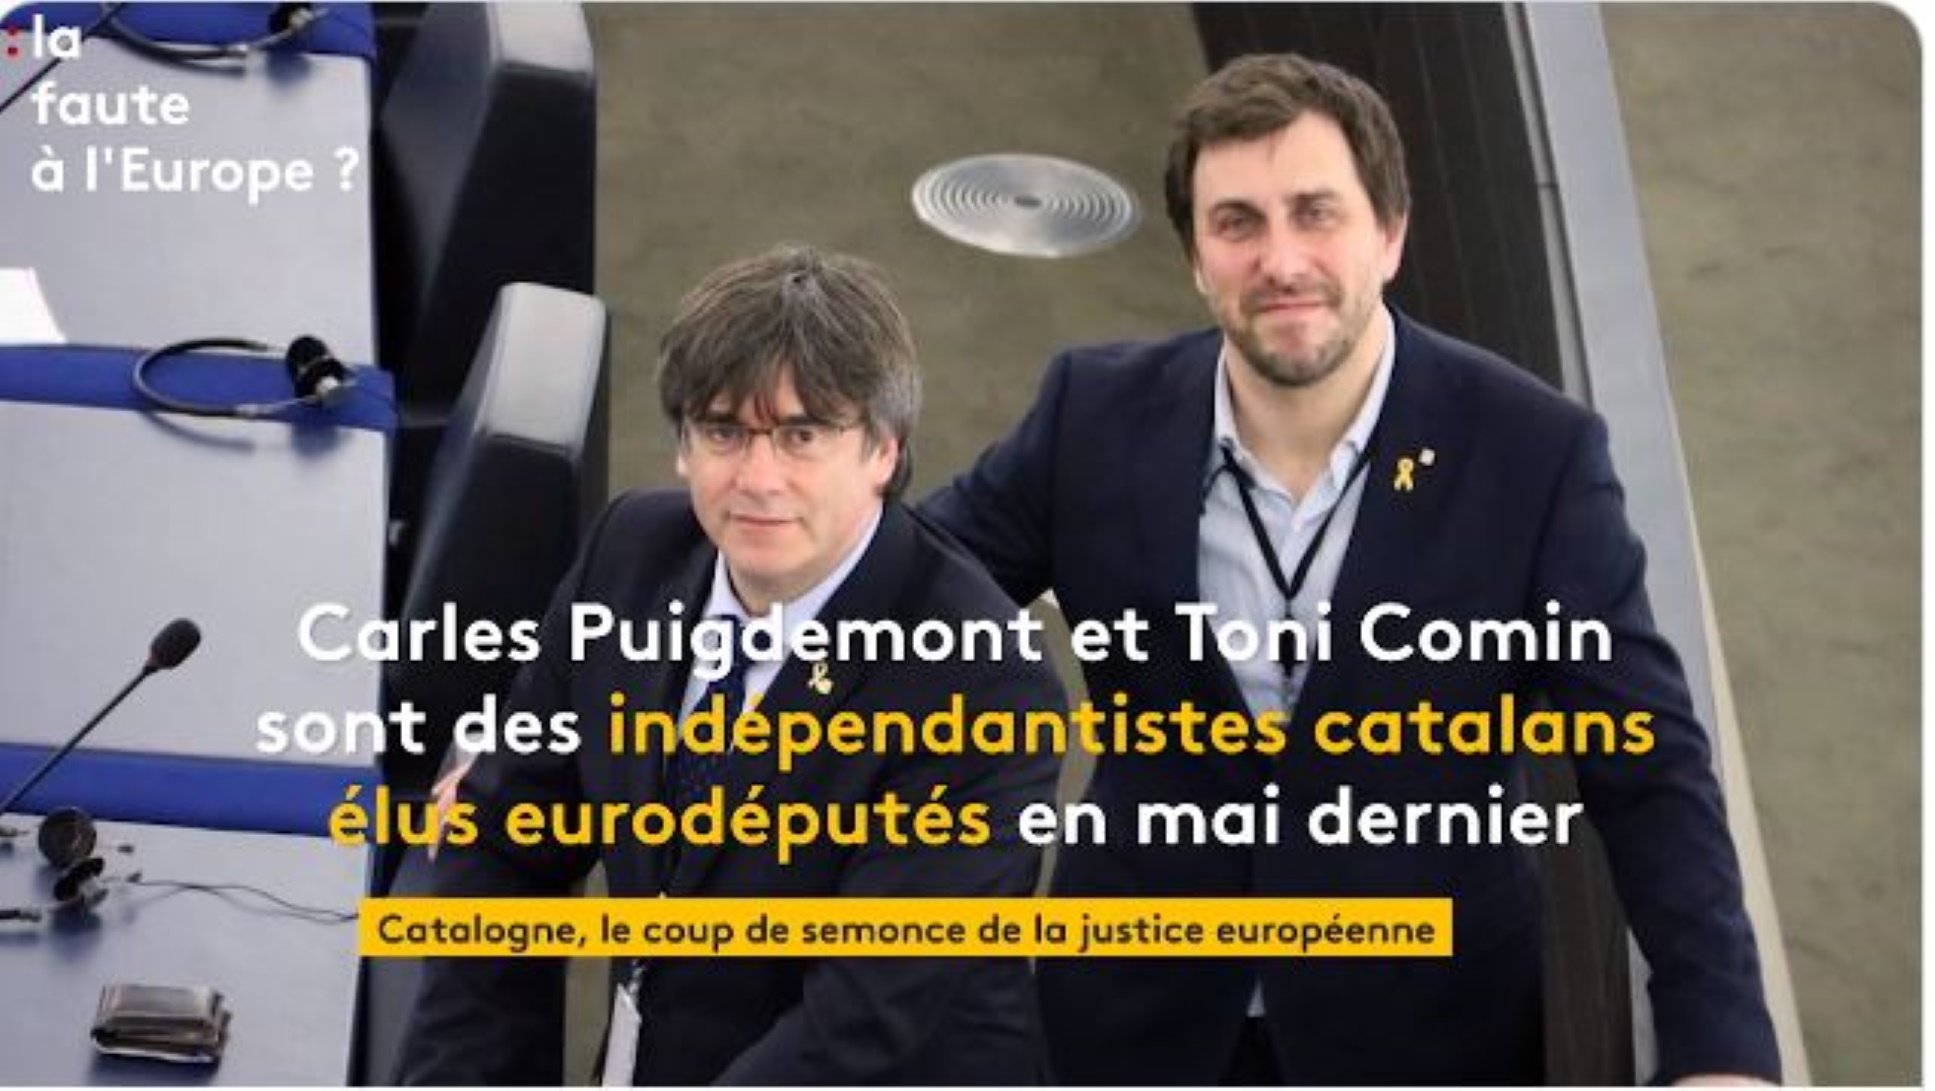 France Info sella así la entrada de Catalunya en el debate europeo